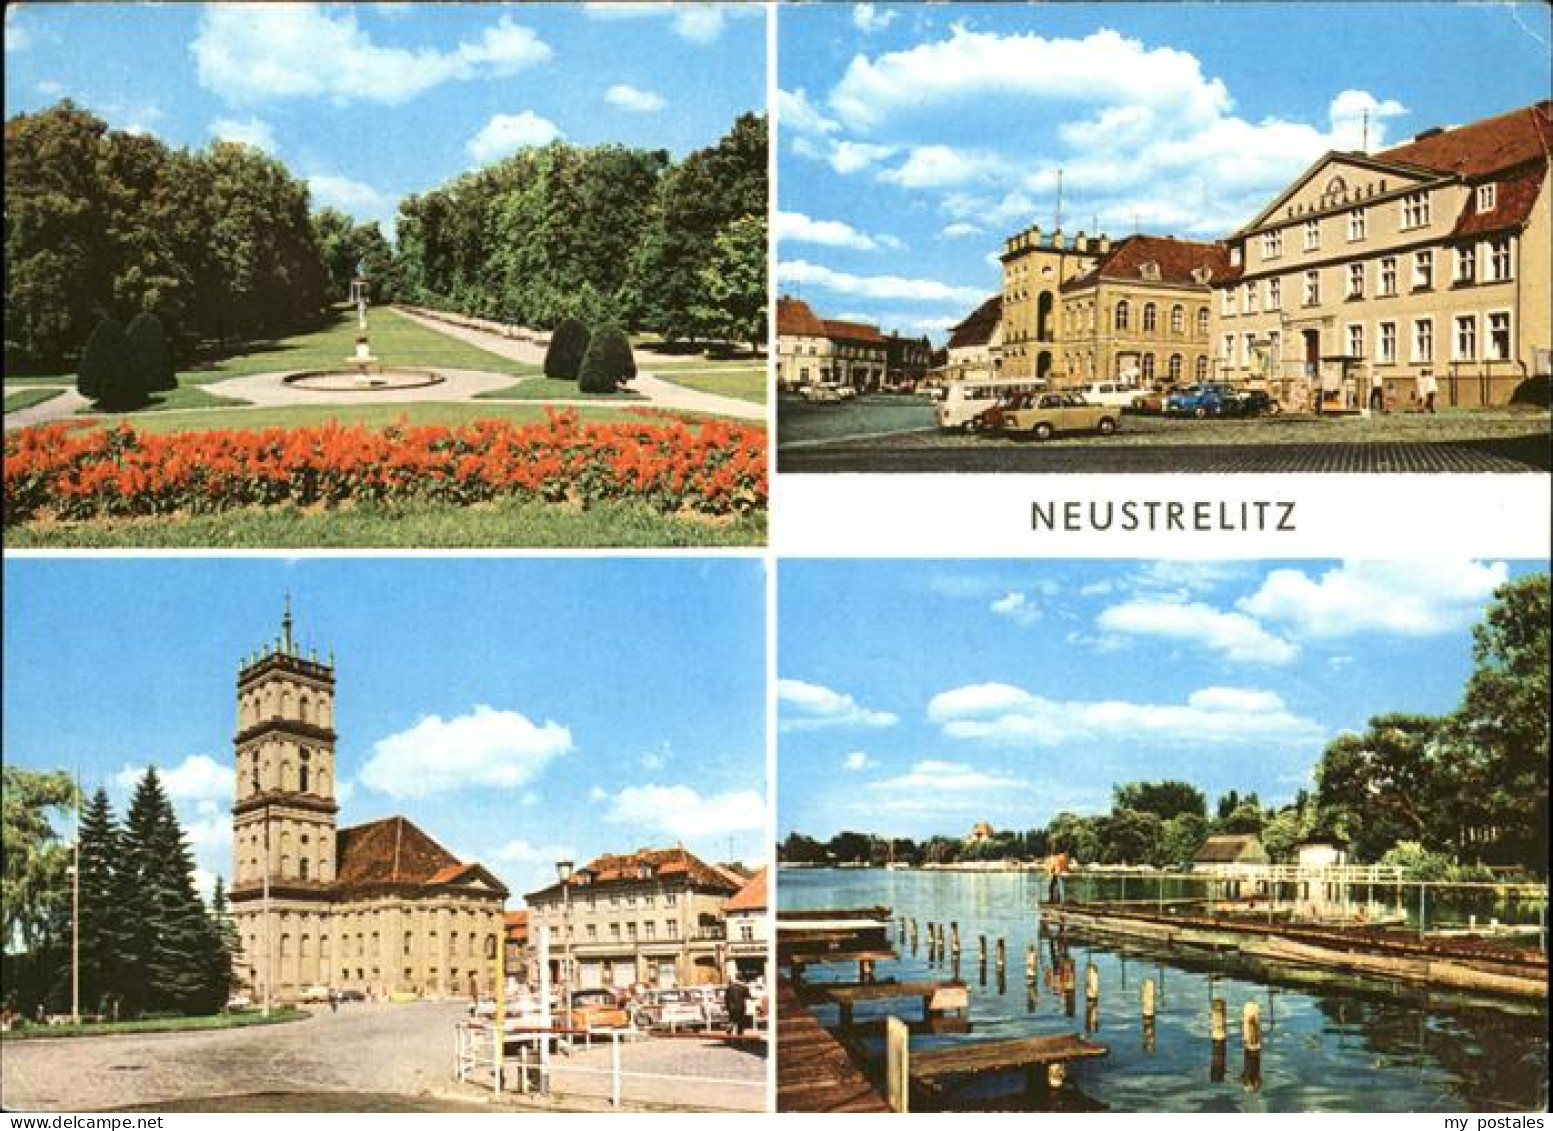 41225870 Neustrelitz Stadtpark, Rathaus, Marktplatz, Zierker See Neustrelitz - Neustrelitz